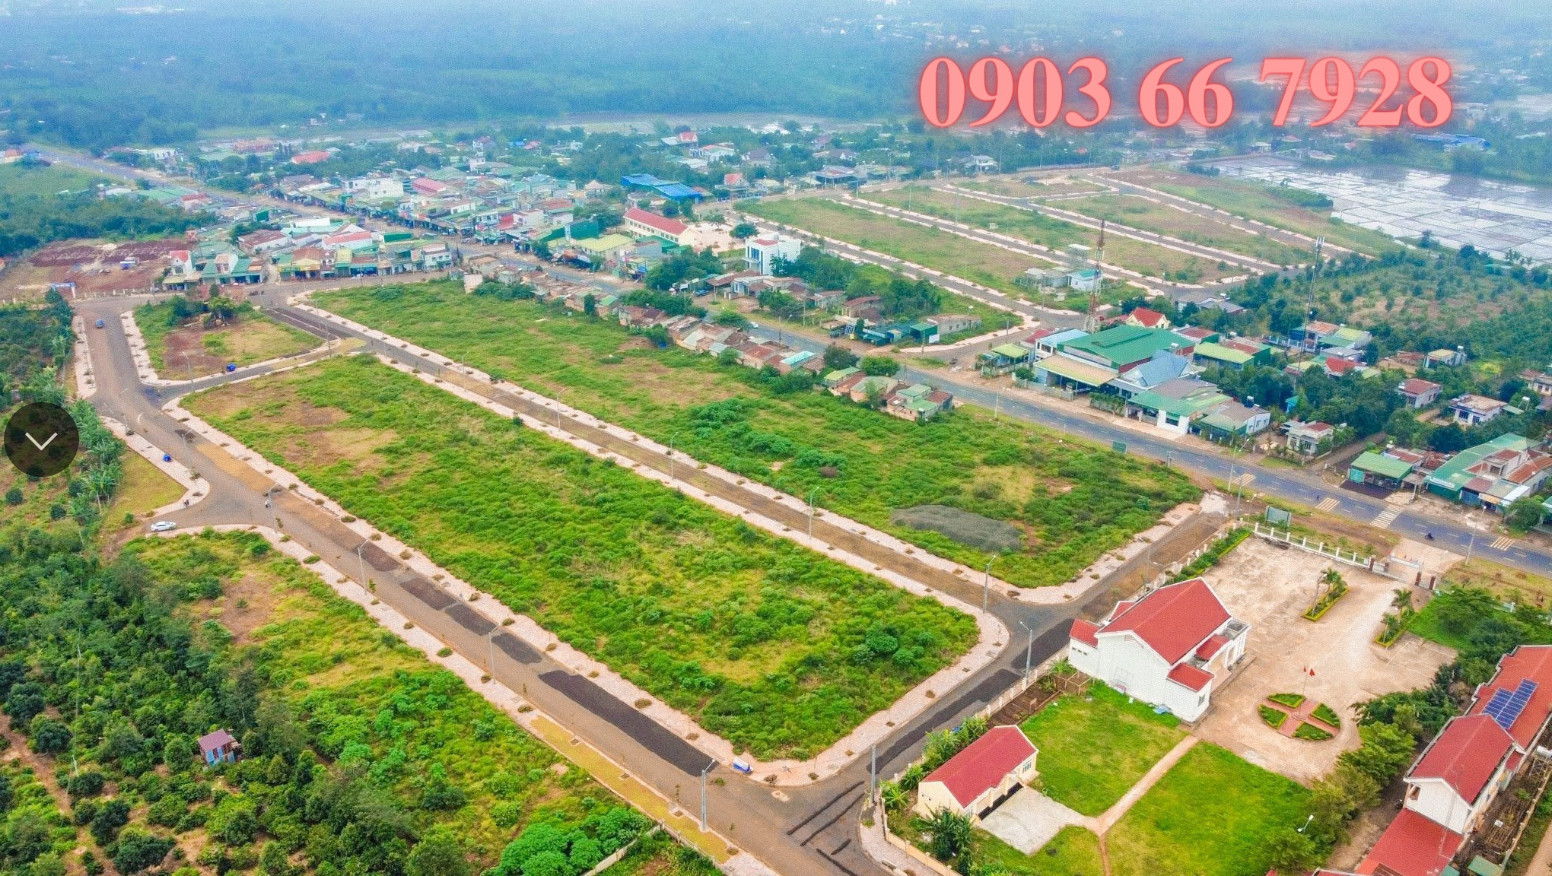 Cần bán Đất nền dự án Phường Tân Lợi, Buôn Ma Thuột, Diện tích 150m², Giá 900 Triệu - LH: 0903667928 2